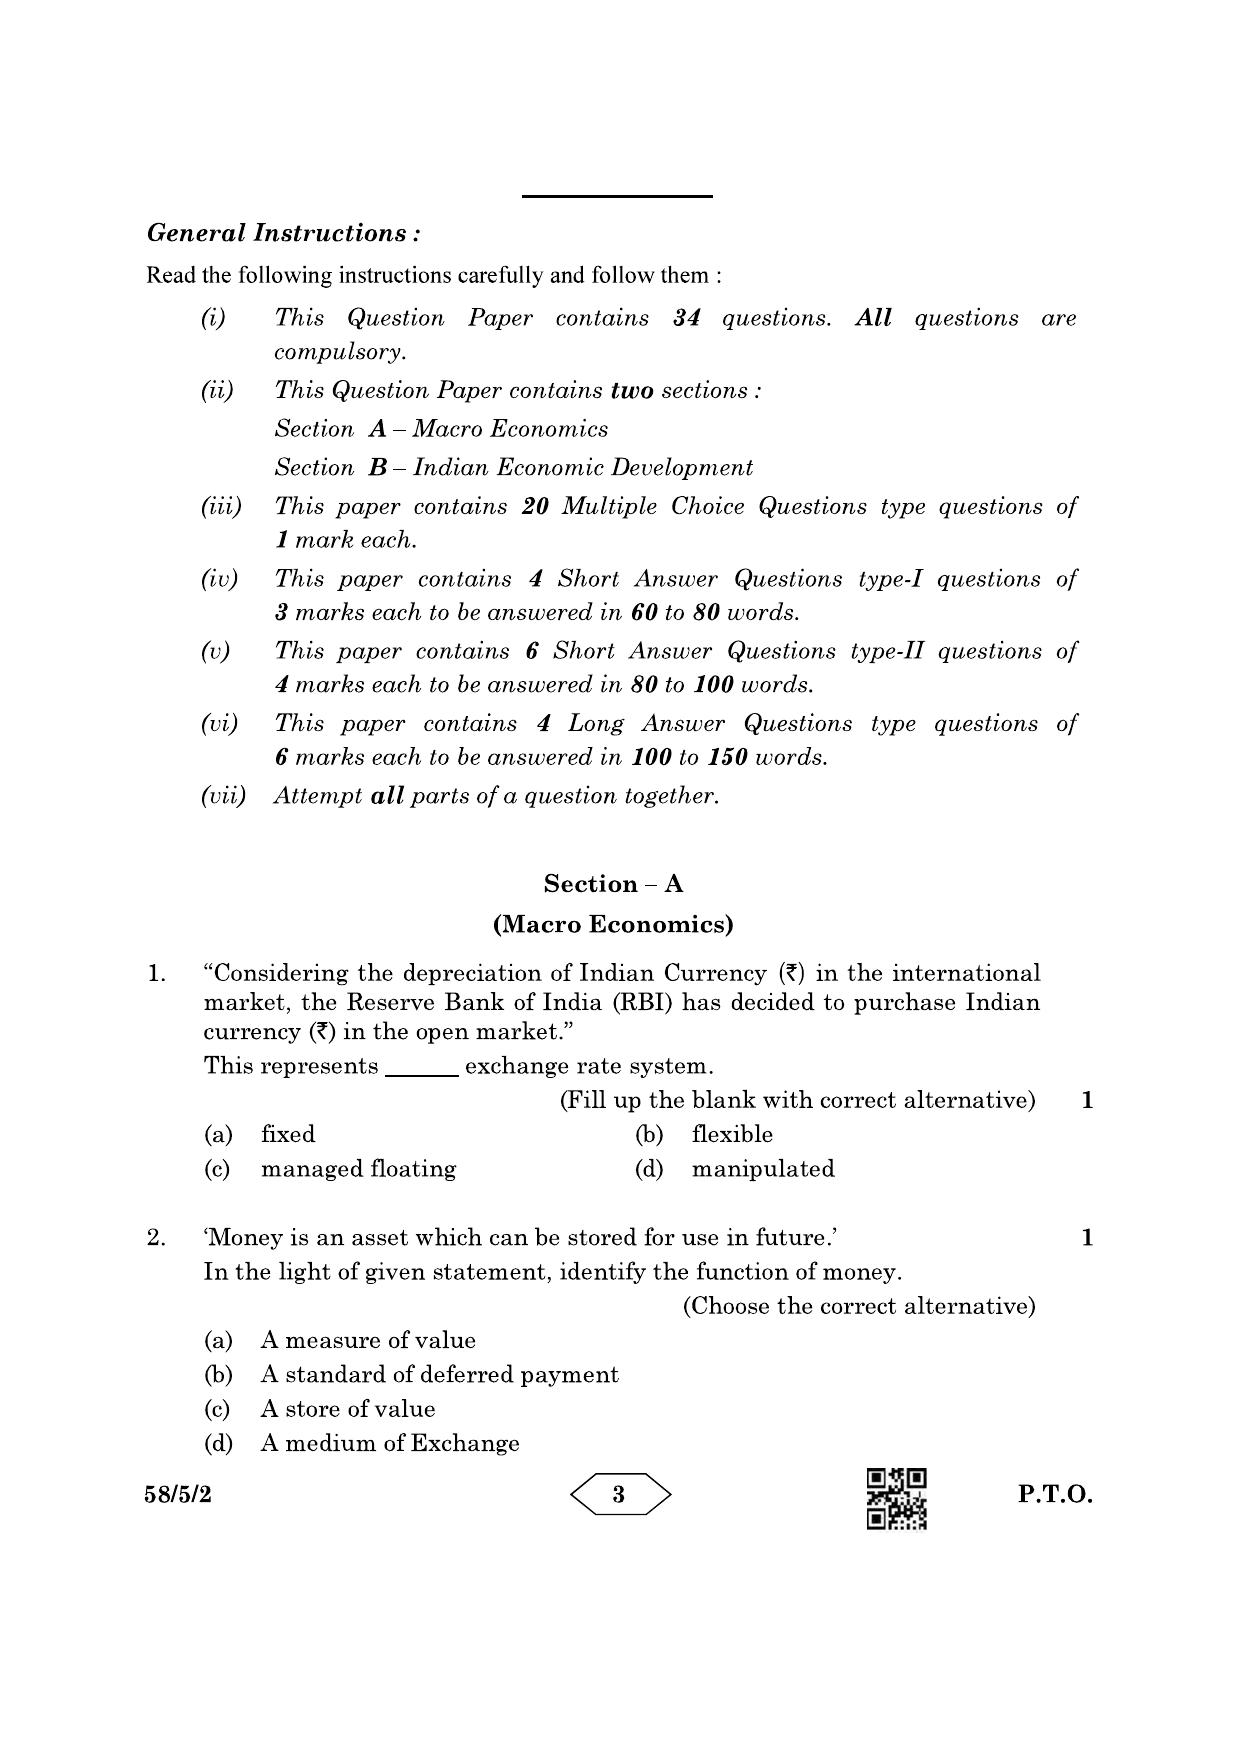 CBSE Class 12 58-5-2 Economics 2023 Question Paper - Page 3